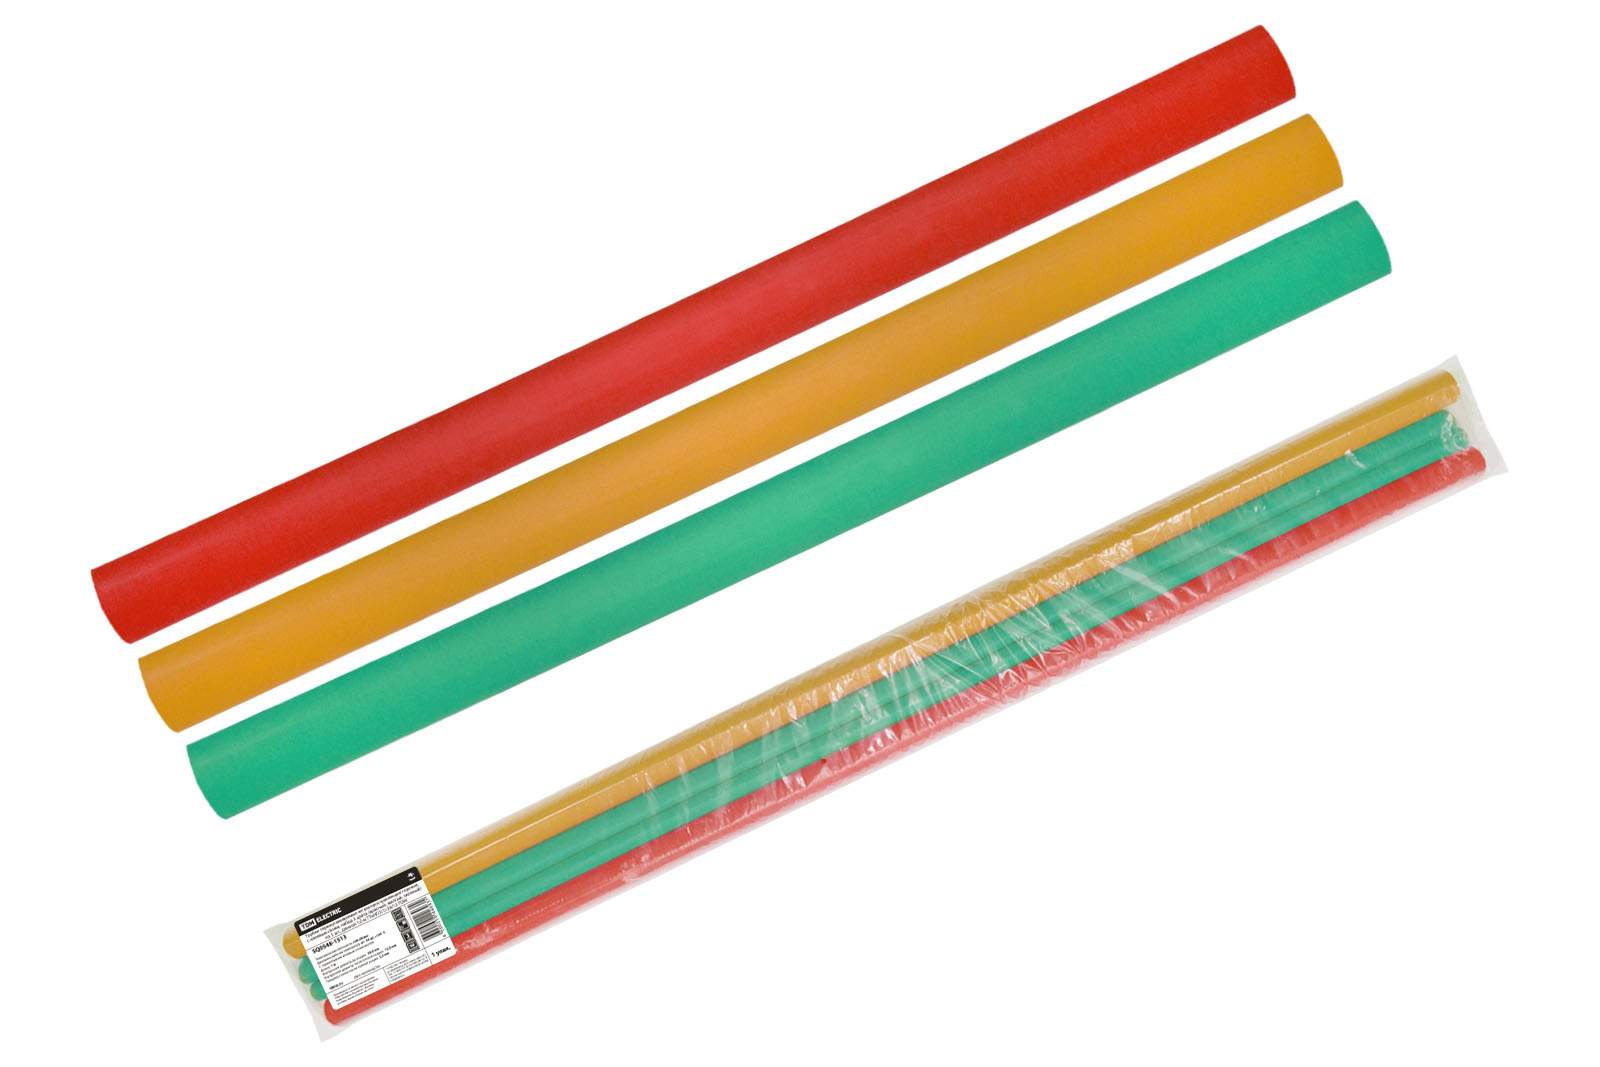 трубки термоусаживаемые, клеевые, набор 3 цвета по 3 шт. тткнг(3:1)-39/13 tdm от BTSprom.by